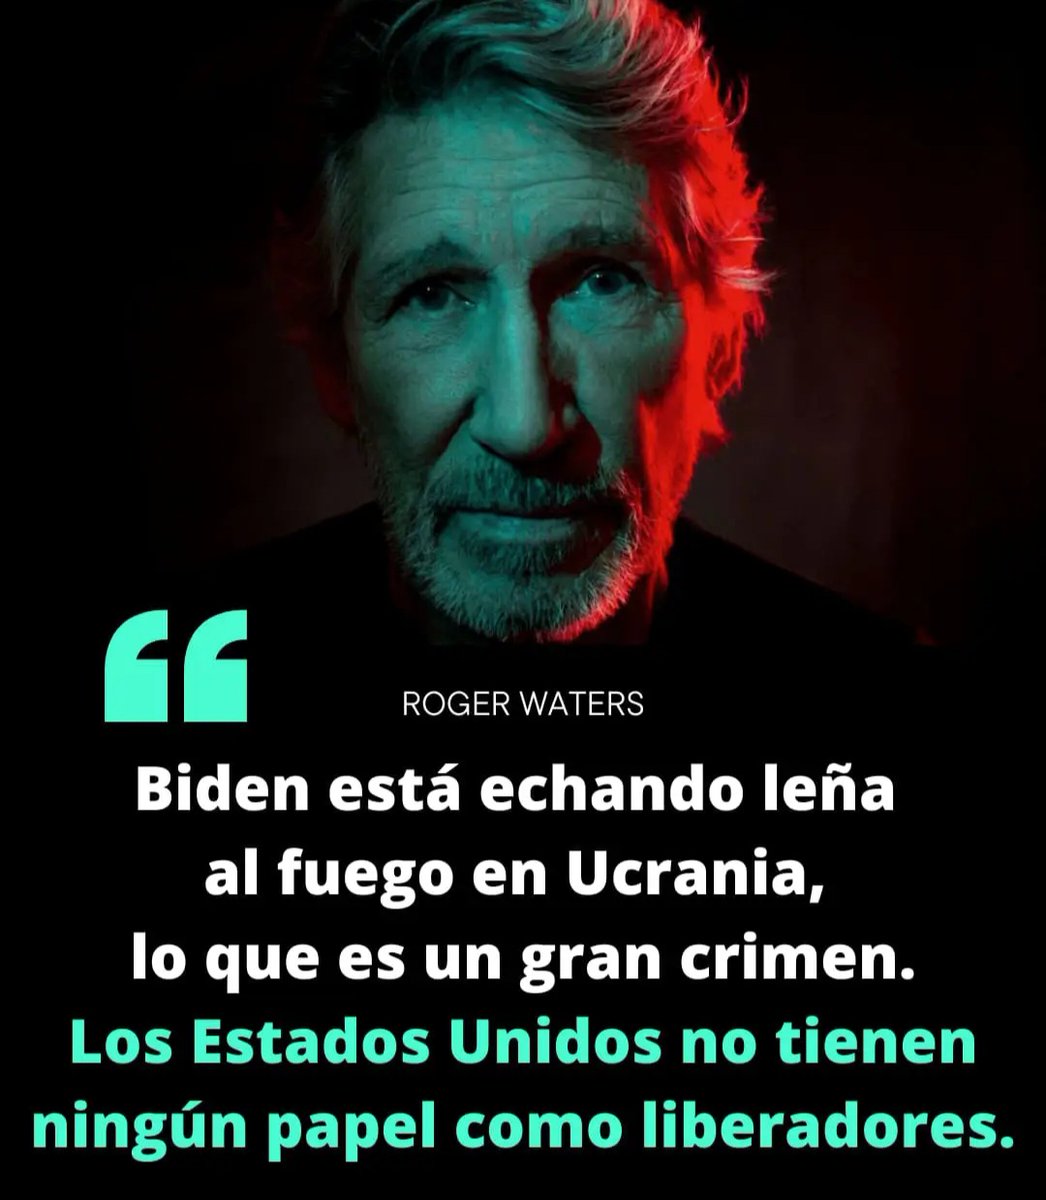 Roger Waters siempre valiente y preciso: